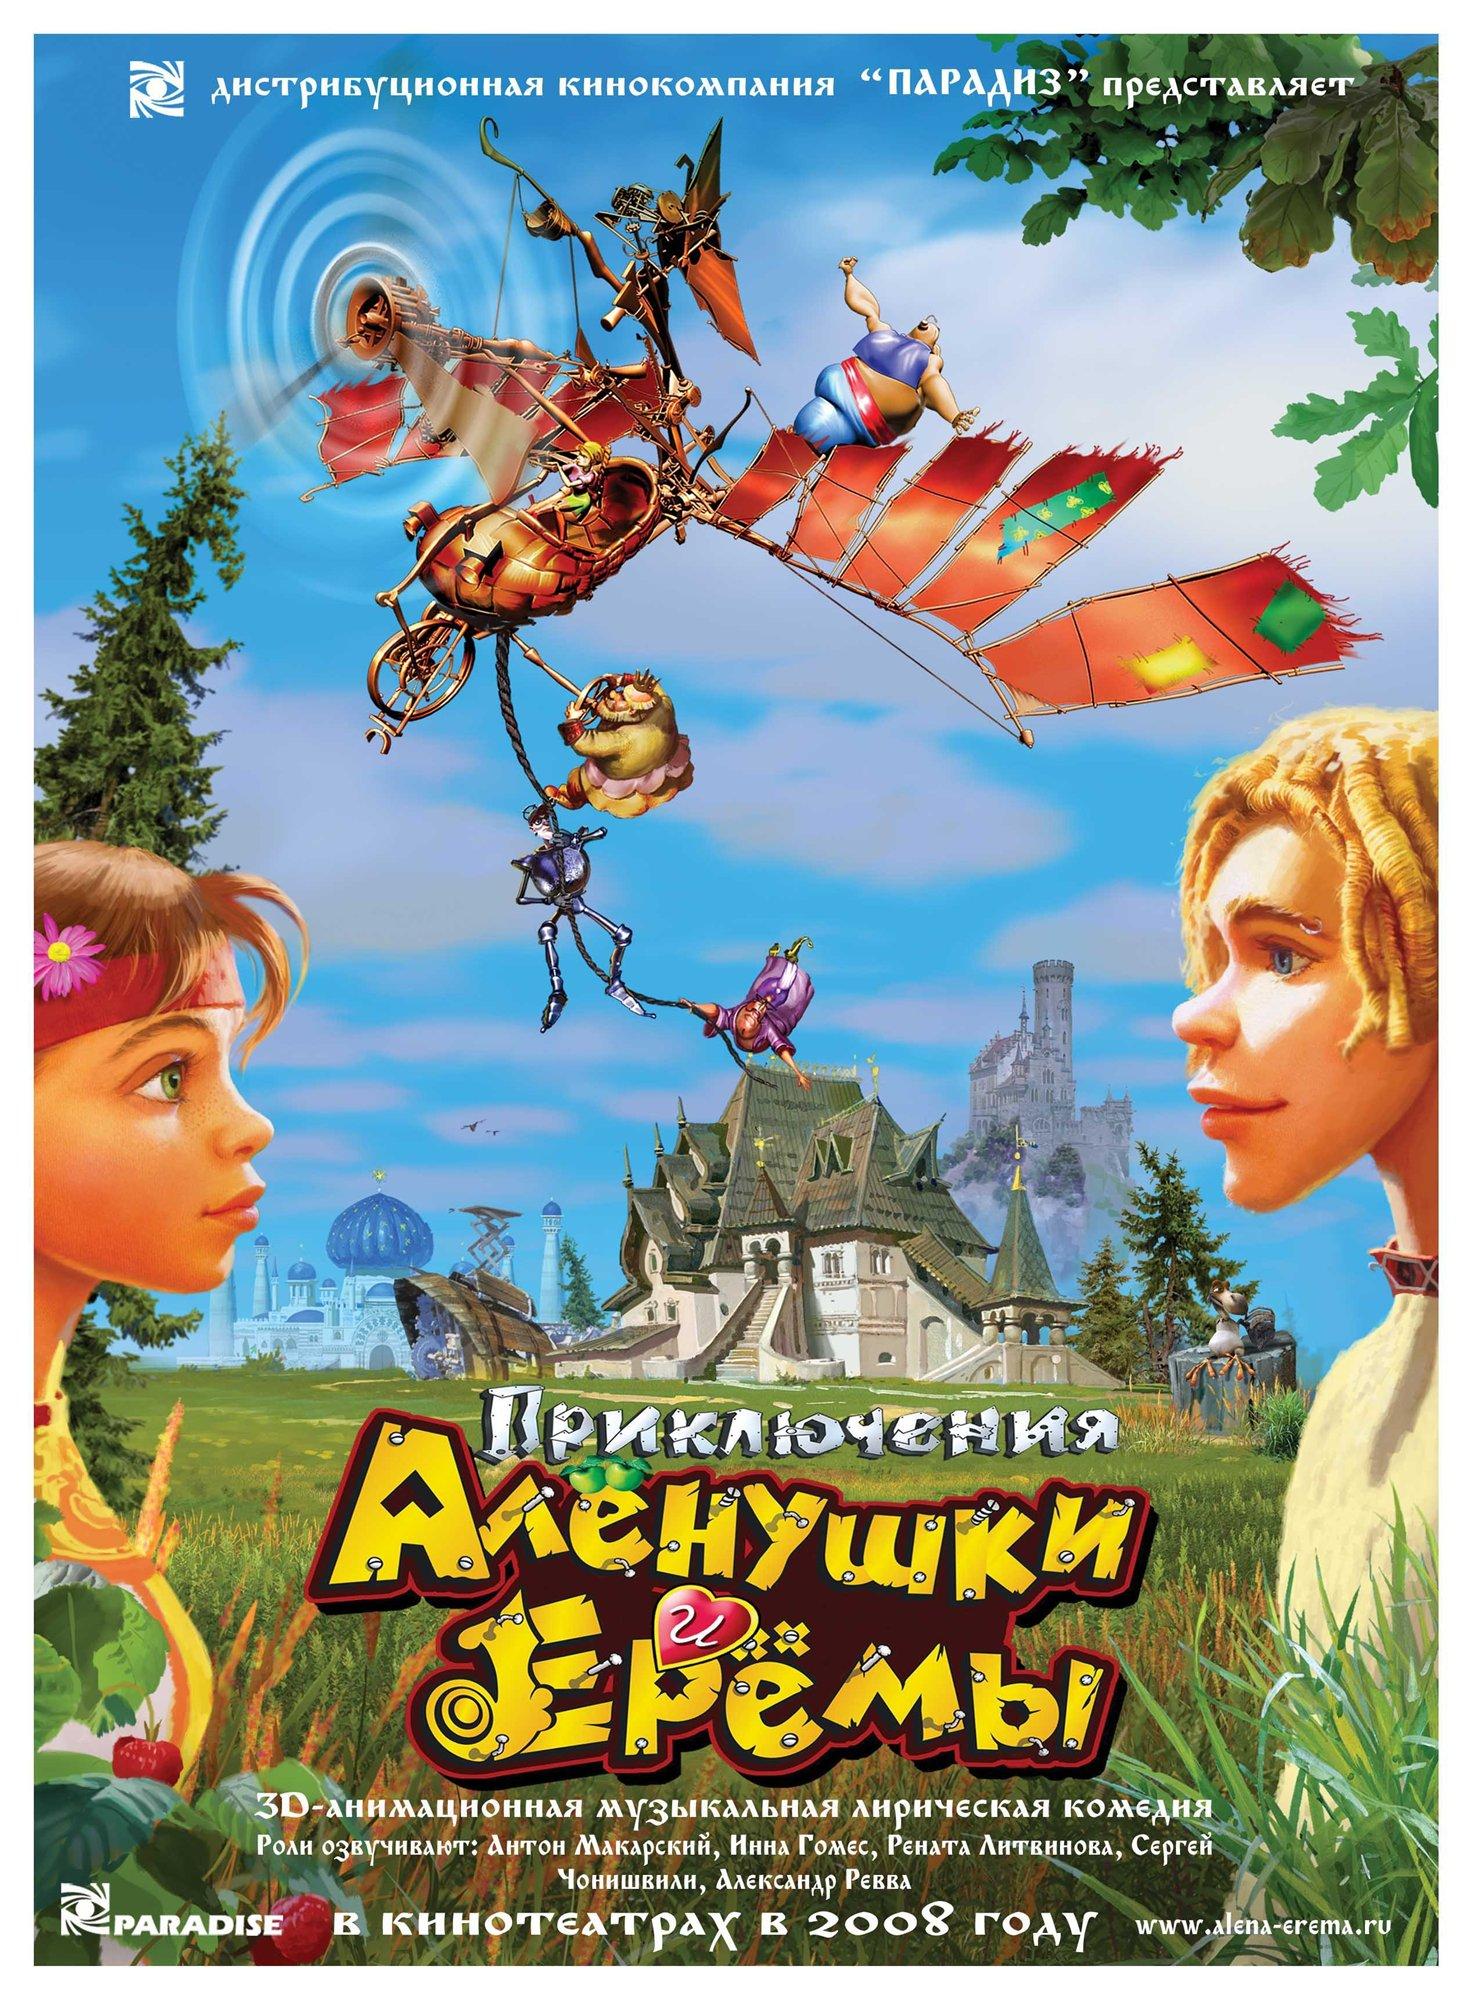 Постер фильма Приключения Аленушки и Еремы | Priklyuchenya Alenushki i Eremi